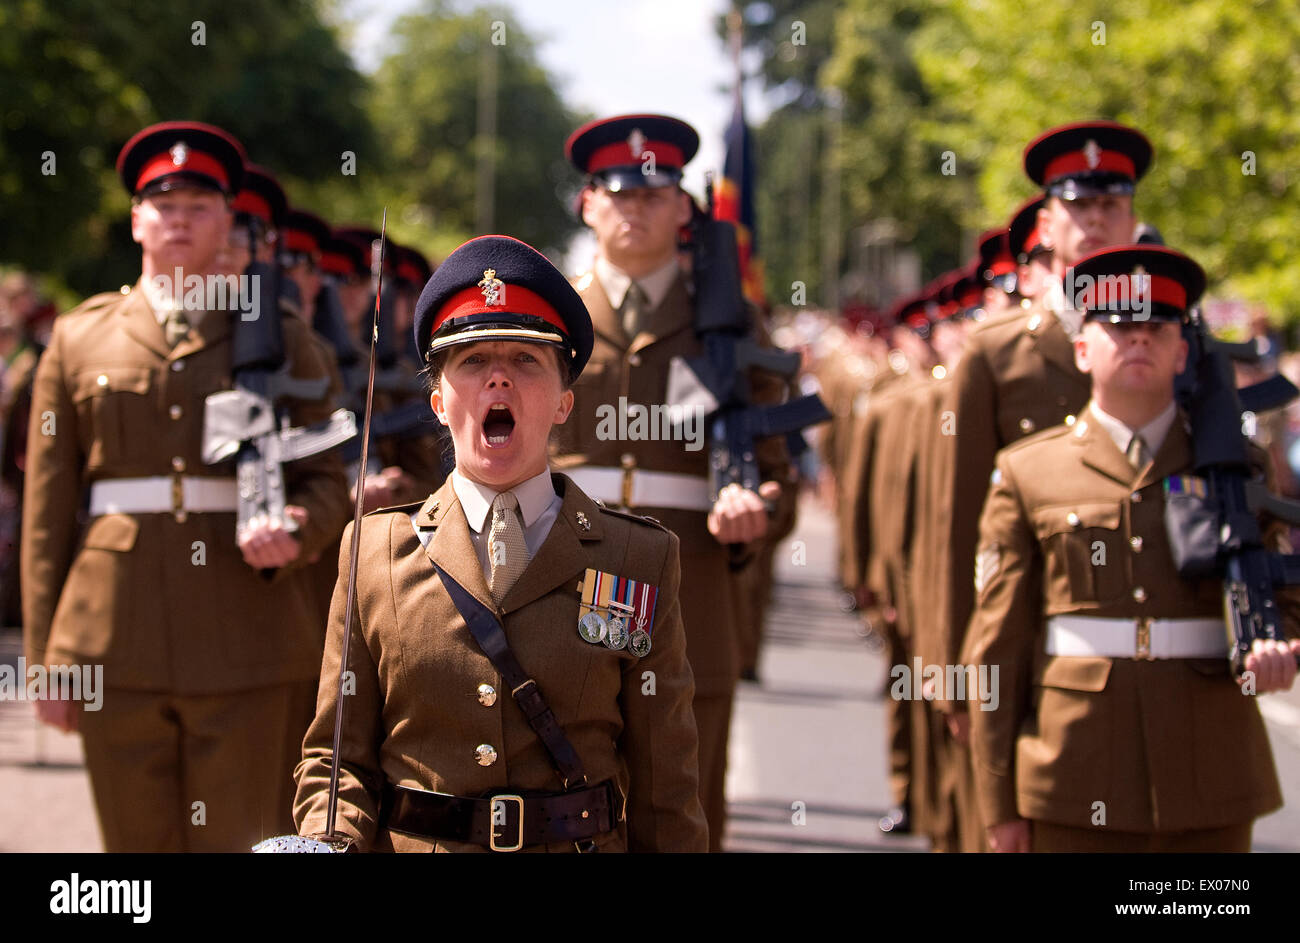 Armee marschiert während Abschiedsrede an die Garnison Festival, Bordon, Hampshire, UK. Samstag, 27. Juni 2015 (Armed Forces Day). Stockfoto